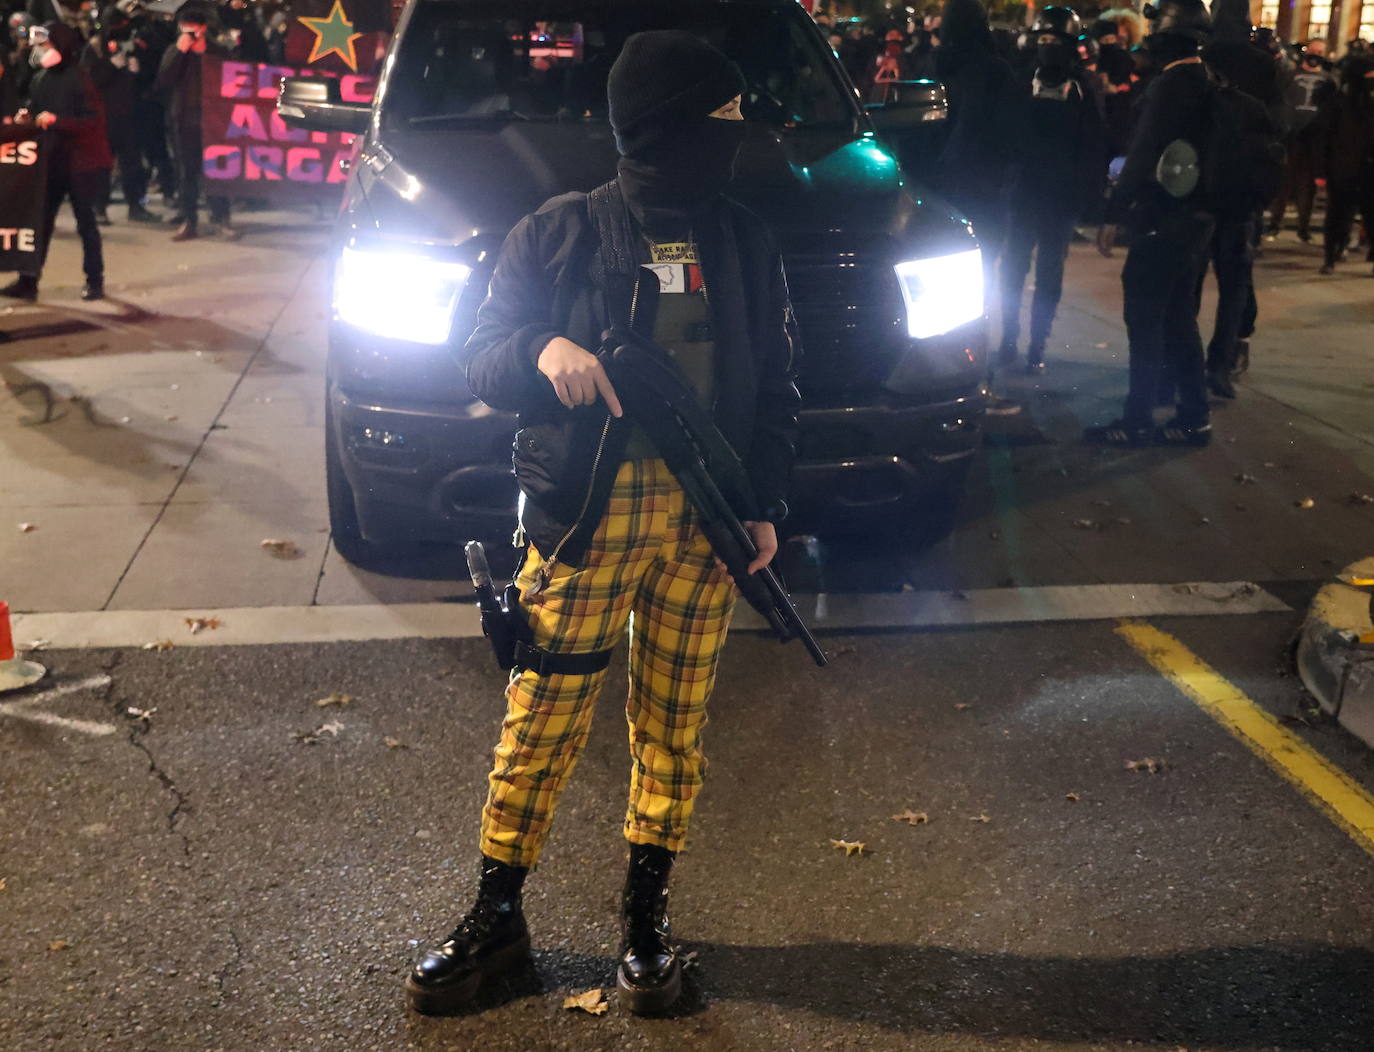 Una manifestante lleva armas durante una protesta, el día después del día de las elecciones, en Portland, Oregon, EE. UU.